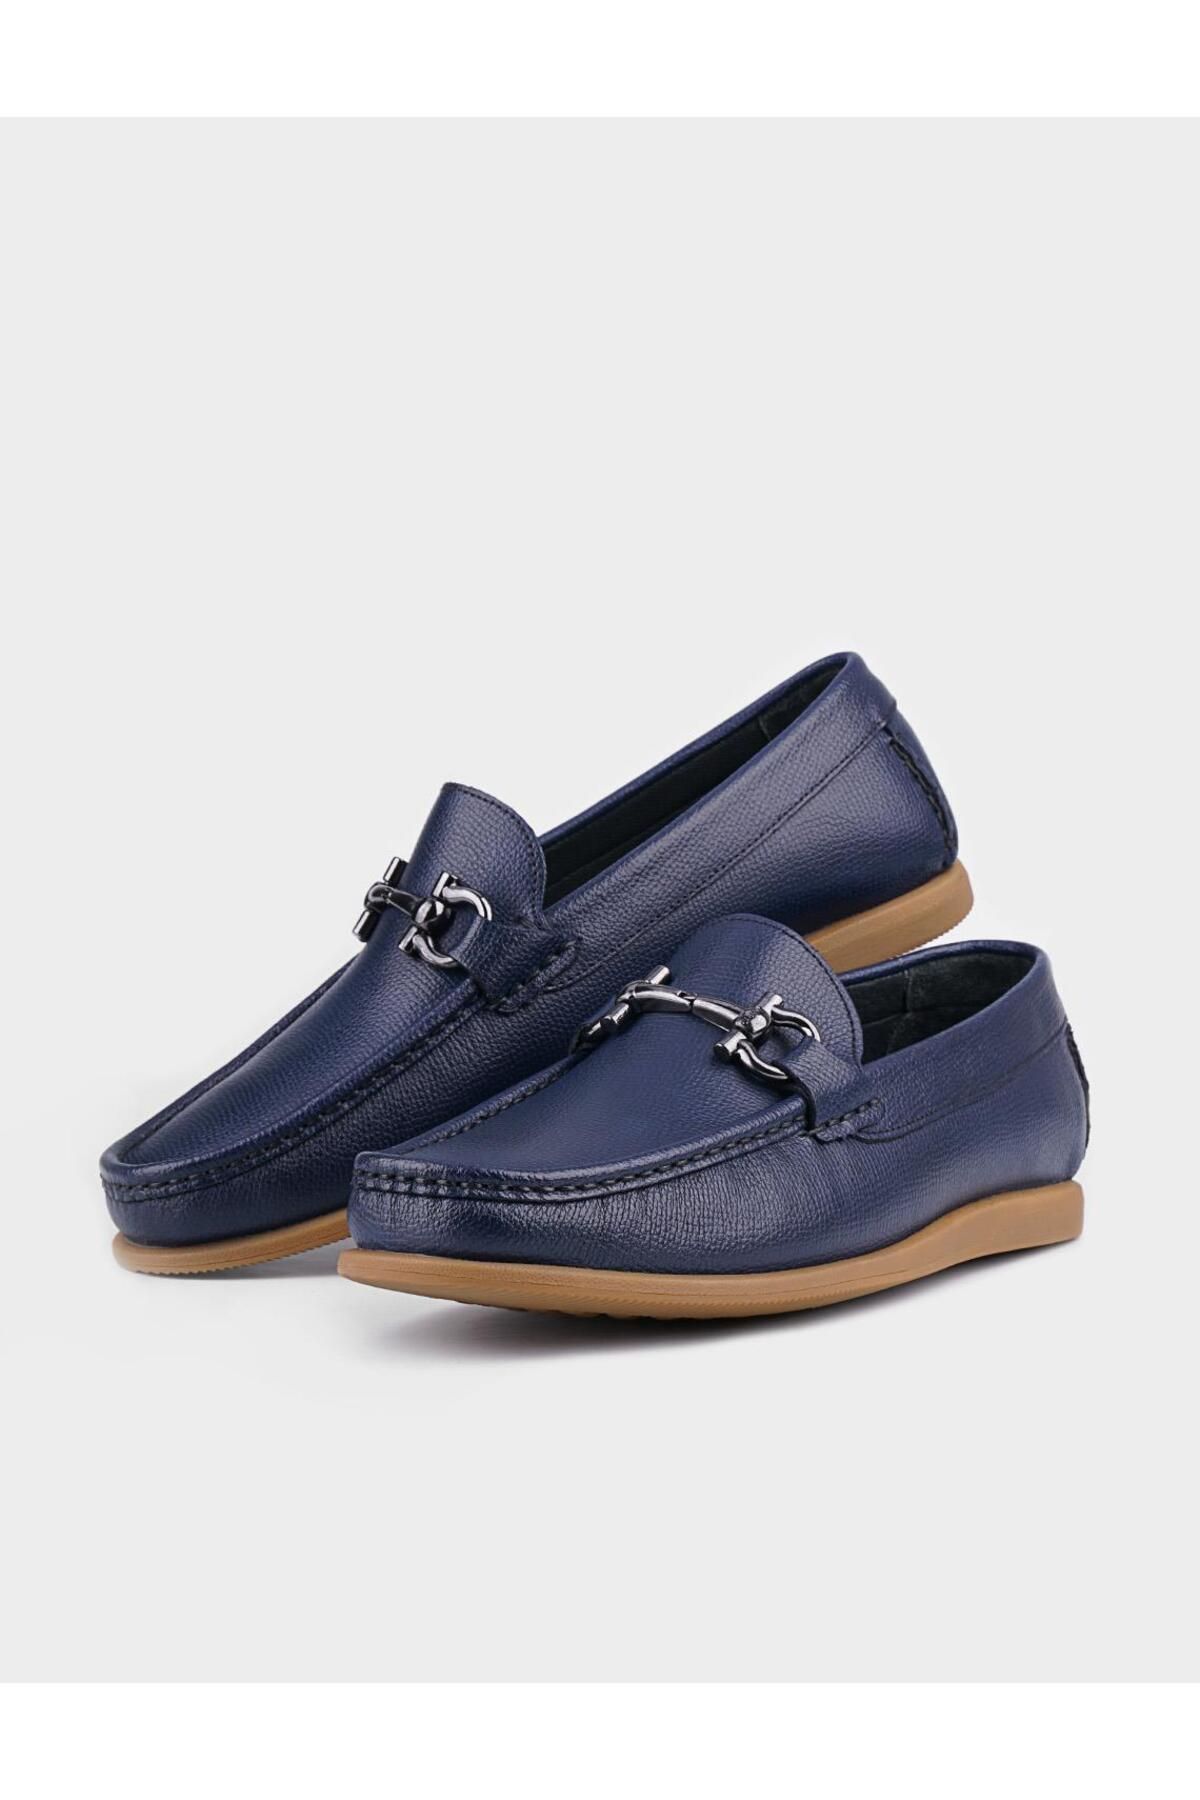 Cabani کفش های روزانه مردانه چرمی آبی با لوازم جانبی فلزی